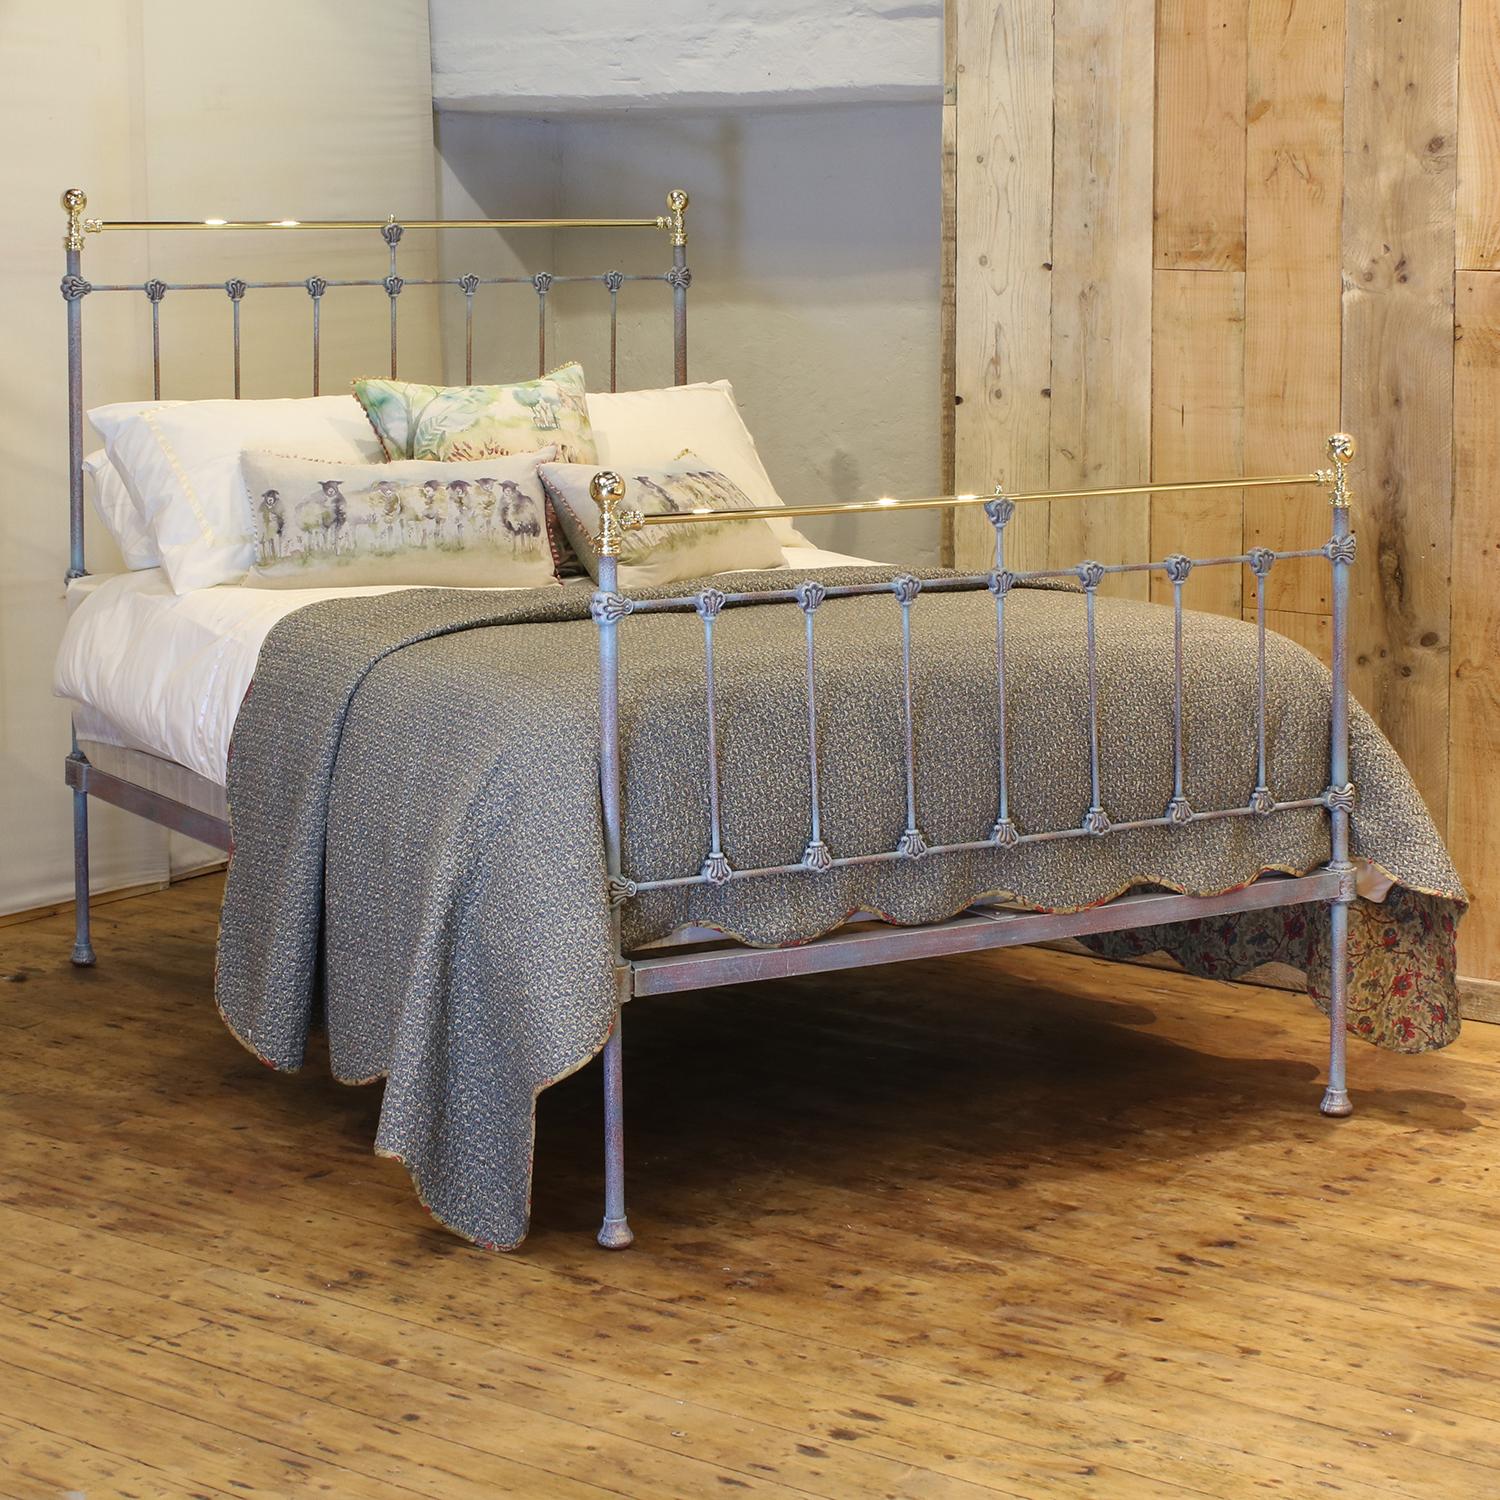 Spätviktorianisches Bett aus antikem Messing und Eisen mit blauem Grünspan, geradem Messinggeländer, Gusskragen und runden Knöpfen. 

Dieses Bett ist für ein Doppelbett mit einer Breite von 54 Zoll (135 cm) und einer Matratze geeignet.

Im Preis